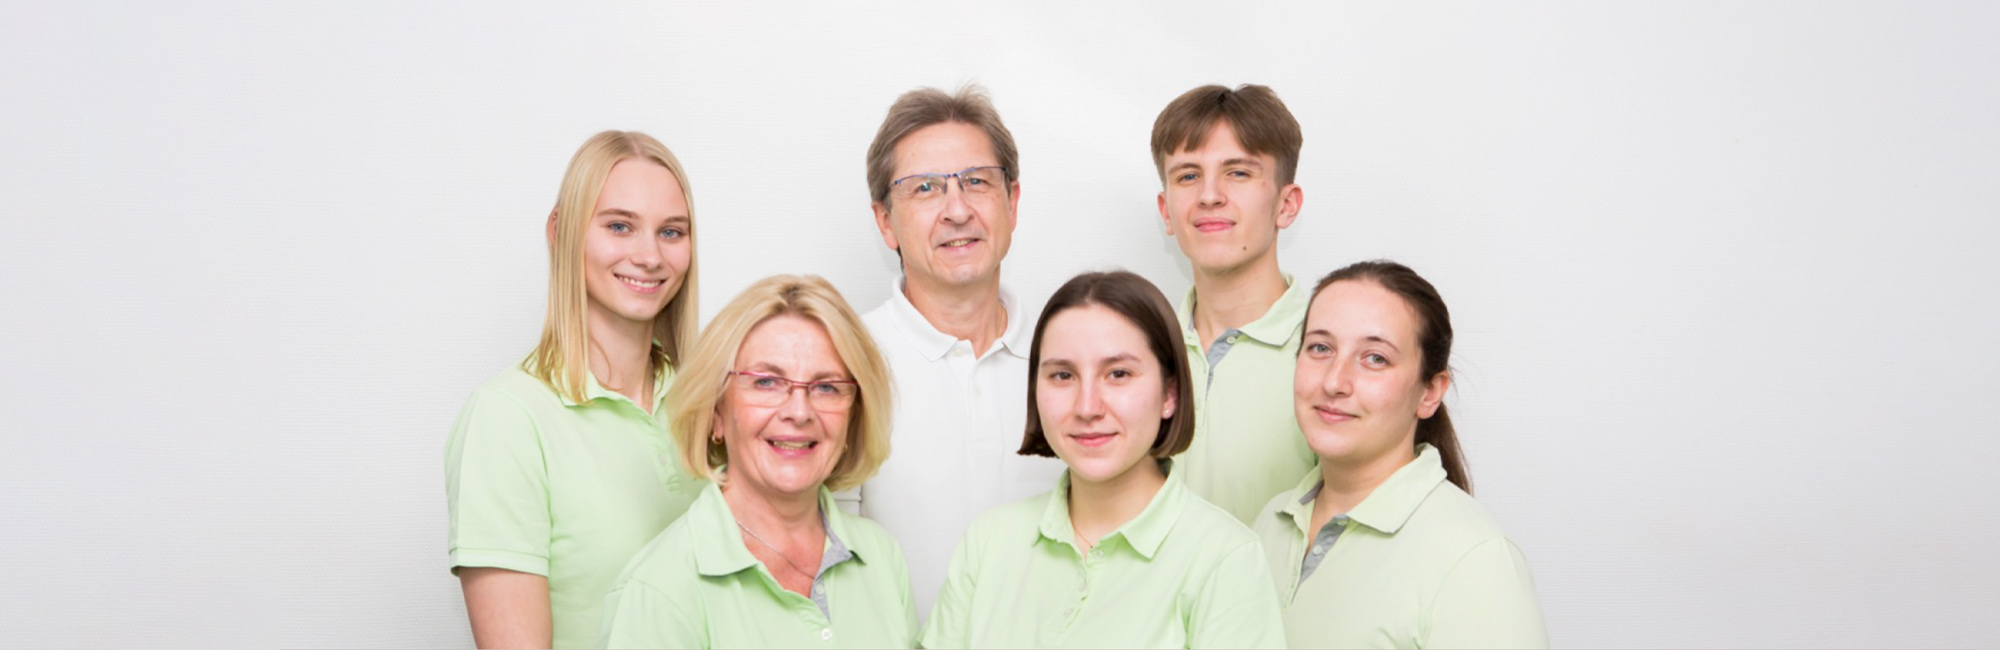 Orthopädie Wannsee - Harbrecht - Team